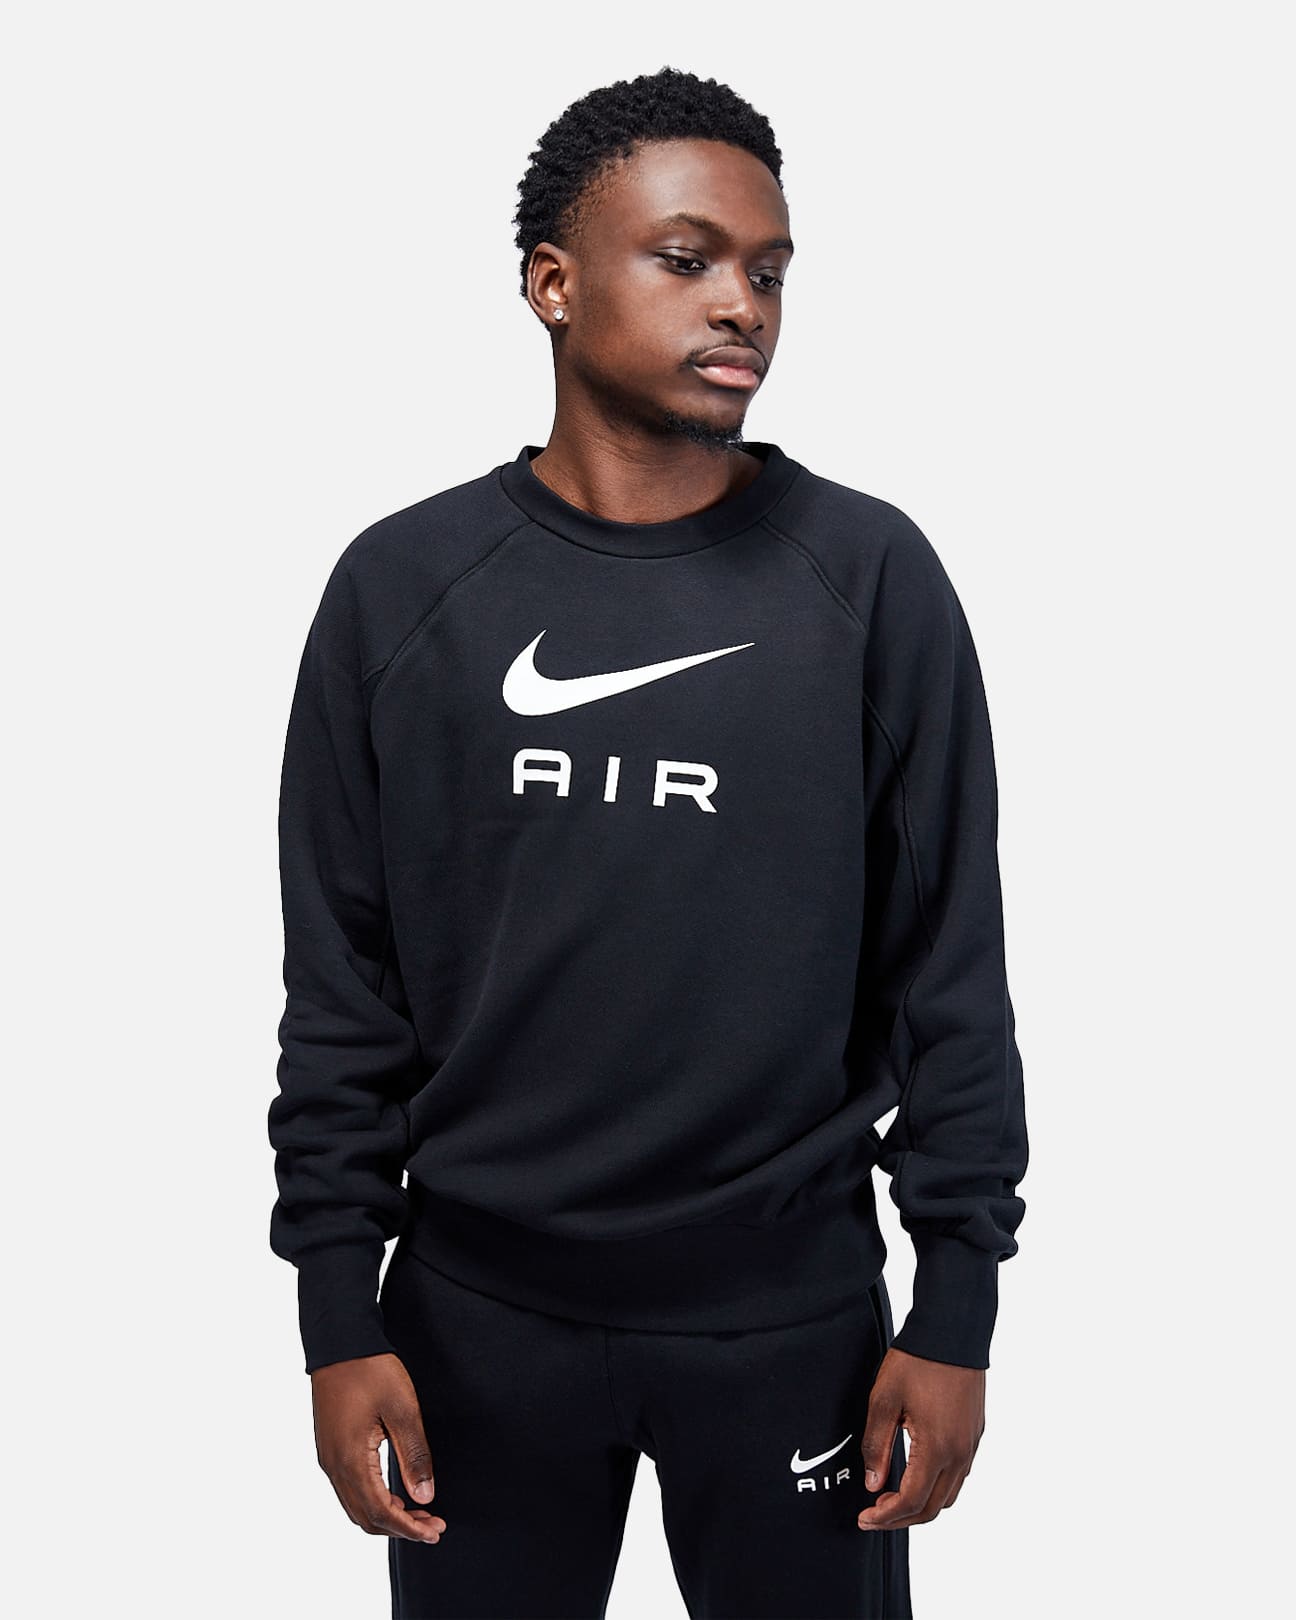 Nike Air-Sweatshirt - Schwarz/Weiß